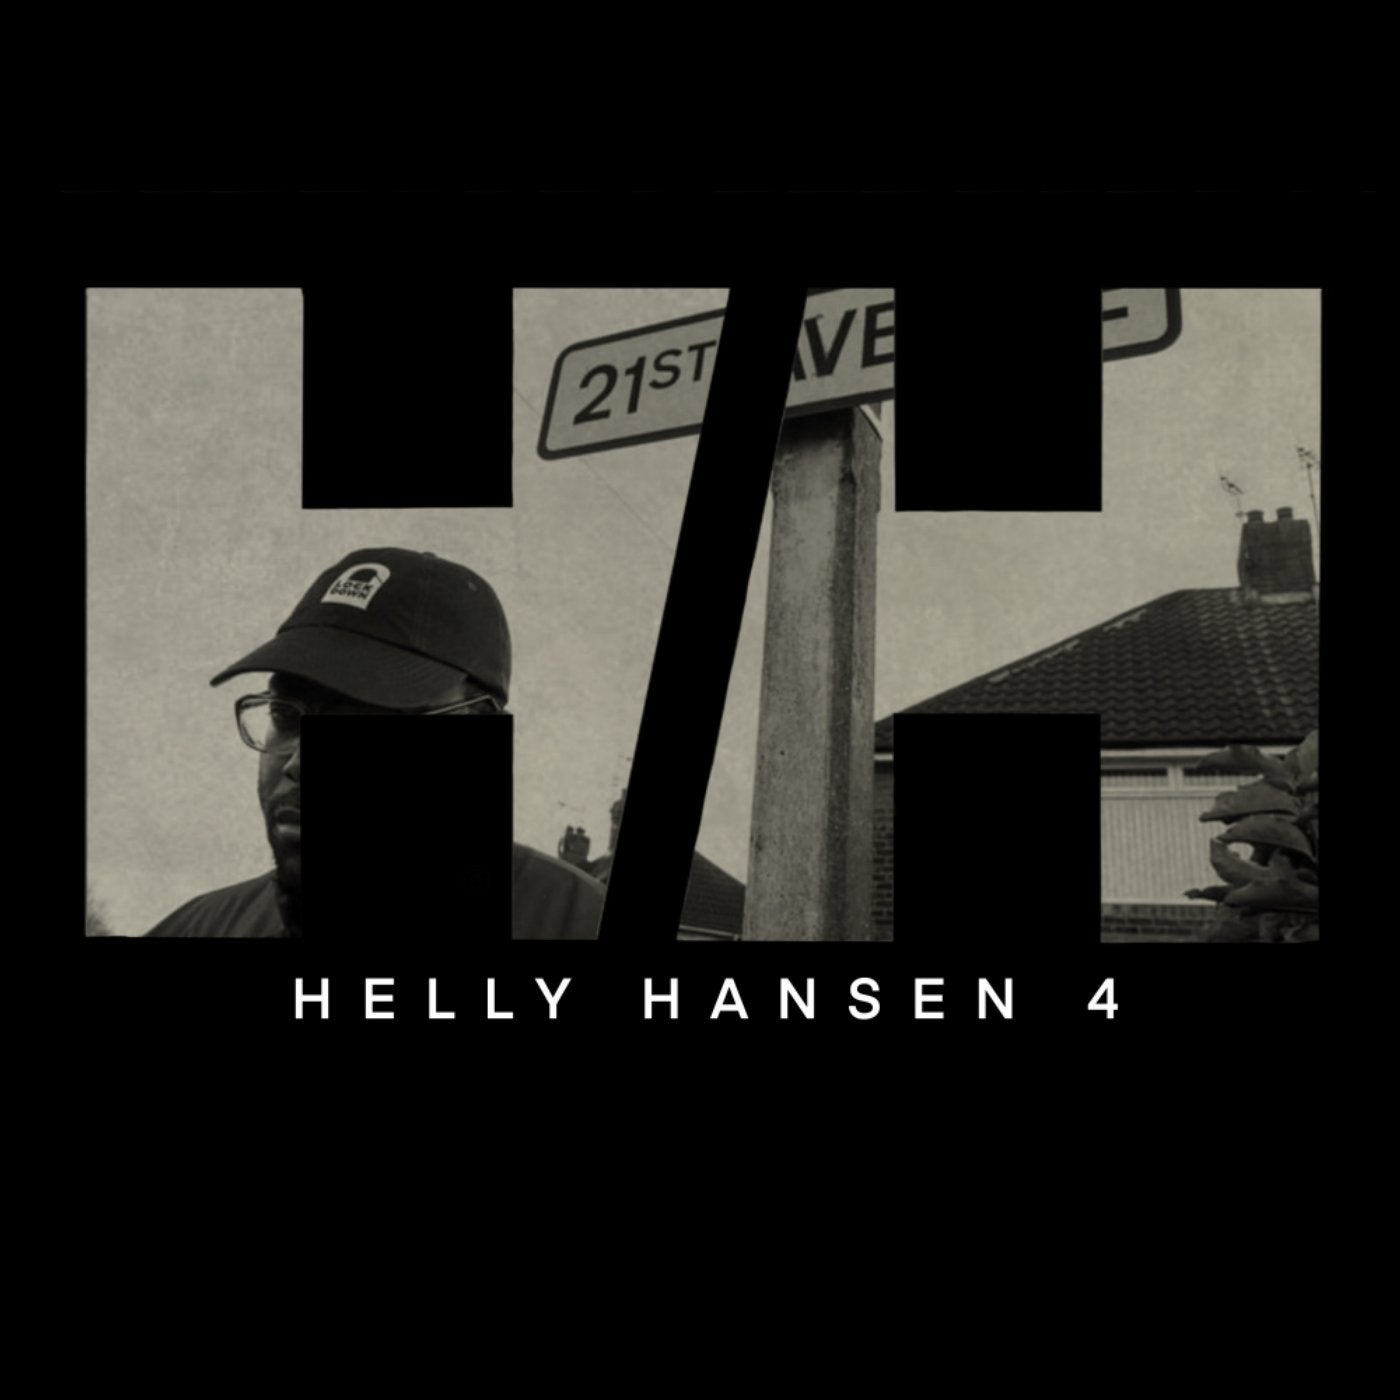 Helly Hansen 4